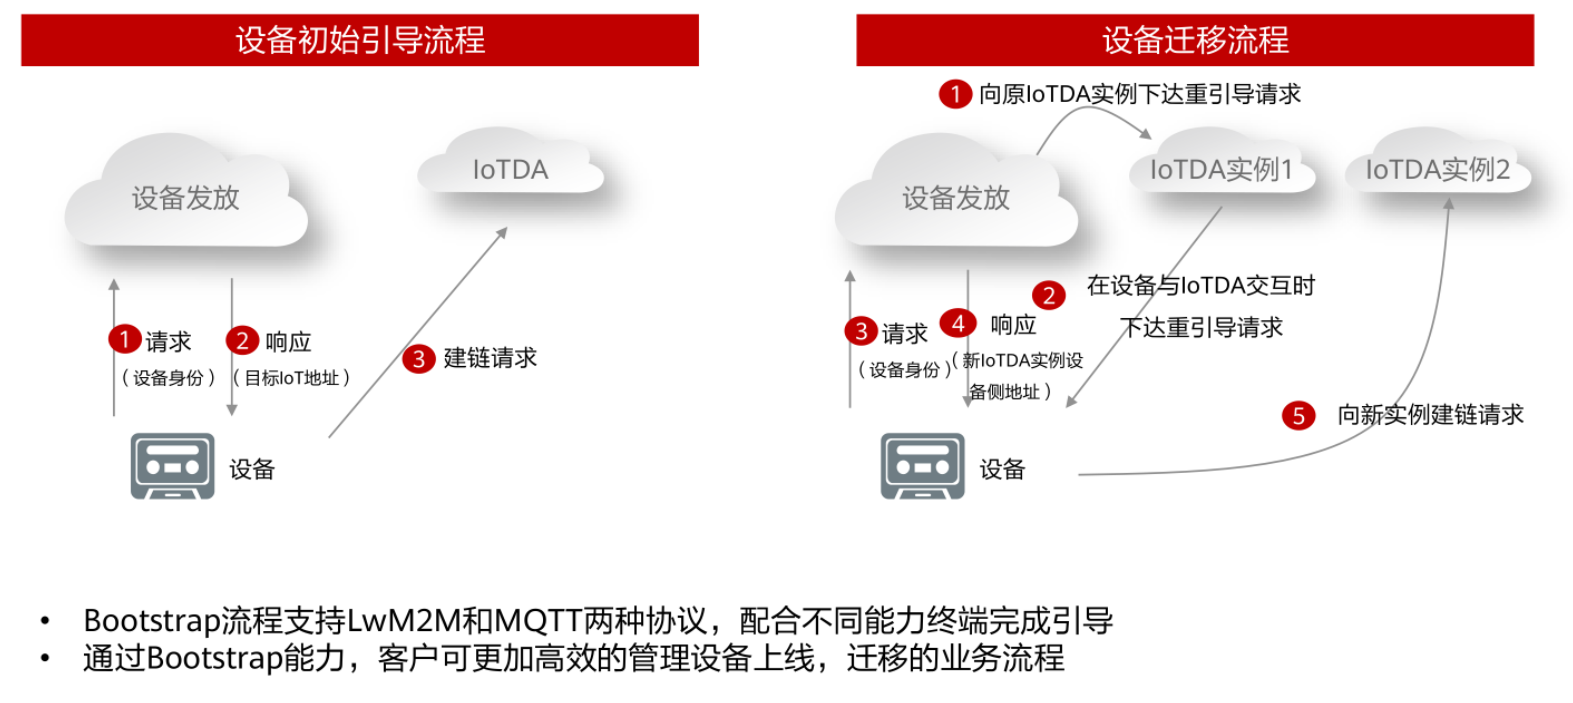 【云驻共创】华为云IoTDA服务下的设备管理流程实操